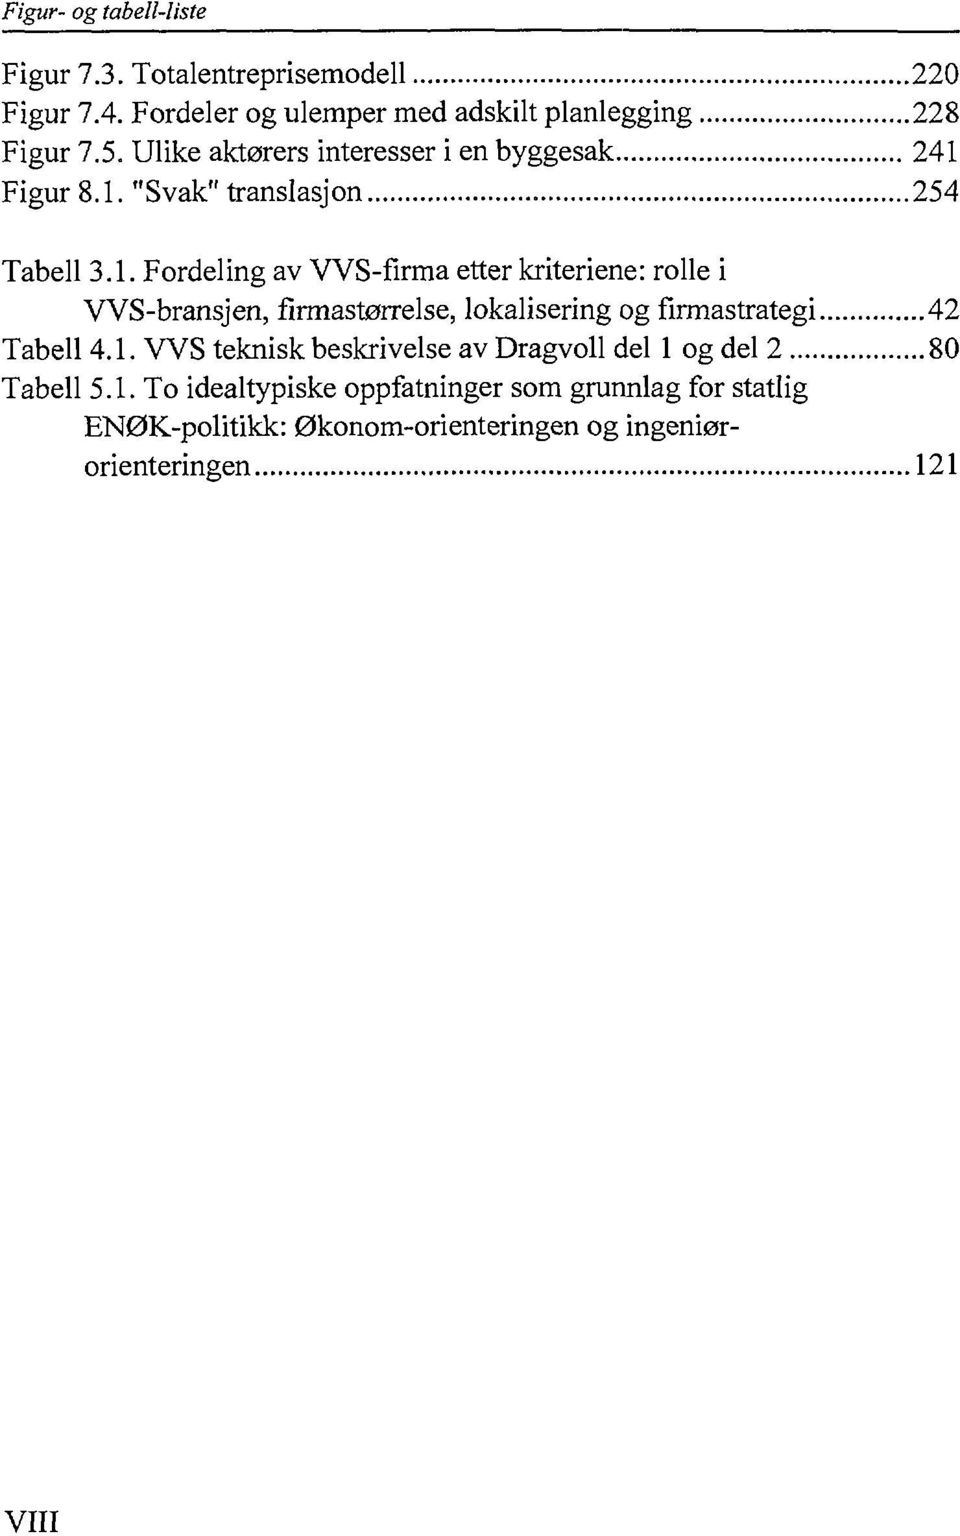 Figur 8.1. "Svak" translasjon 254 Tabell 3.1. Fordeling av VVS-firma etter kriteriene: rolle i VVS-bransjen, firmastørrelse, lokalisering og firmastrategi 42 Tabell 4.